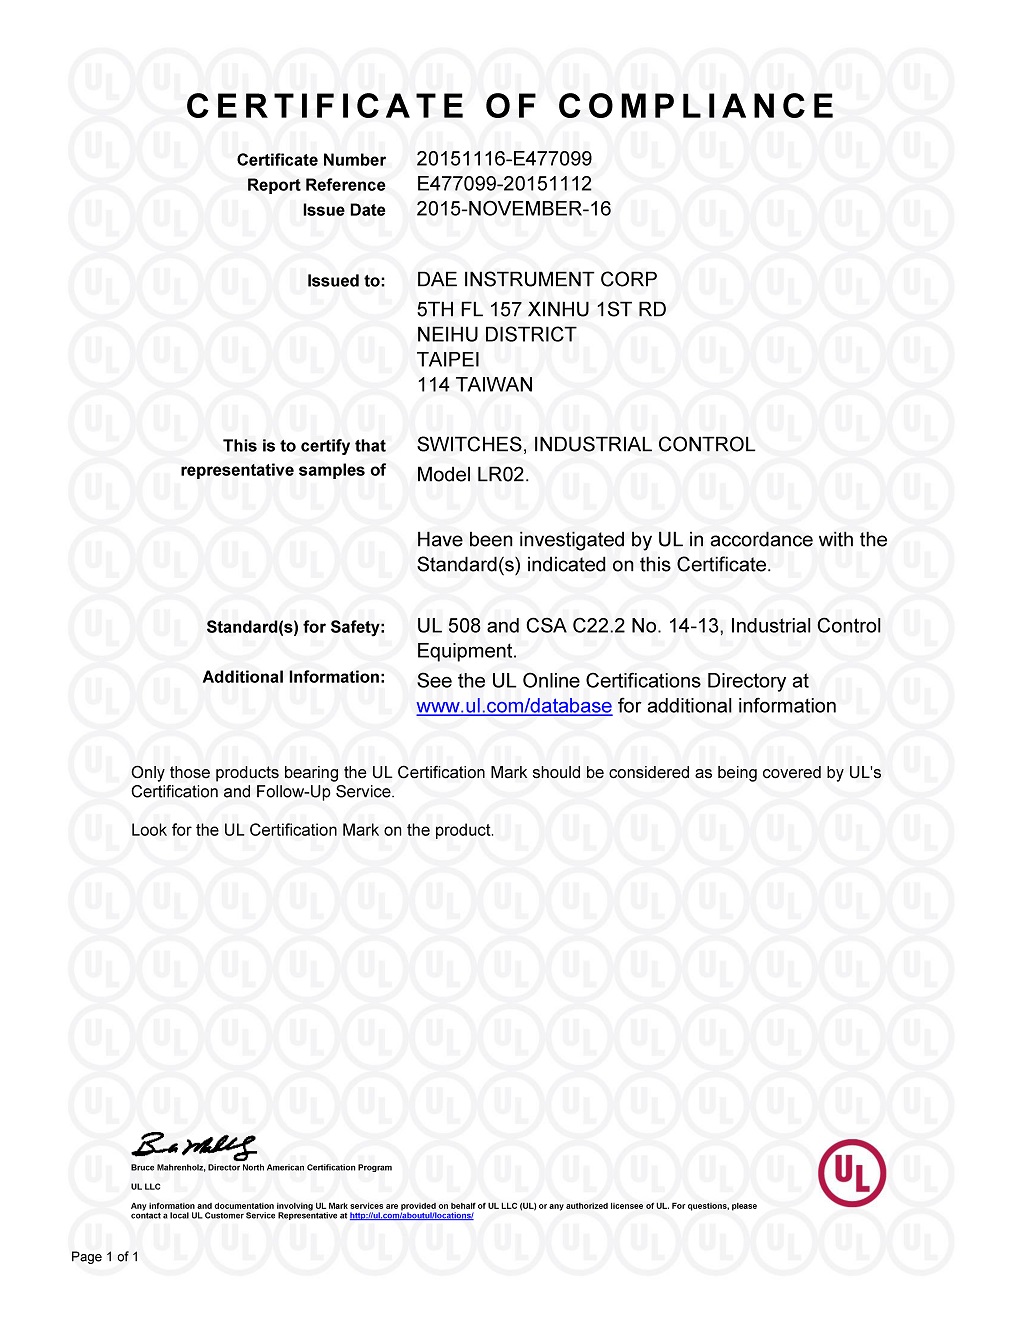 LR02 UL Certificate notice